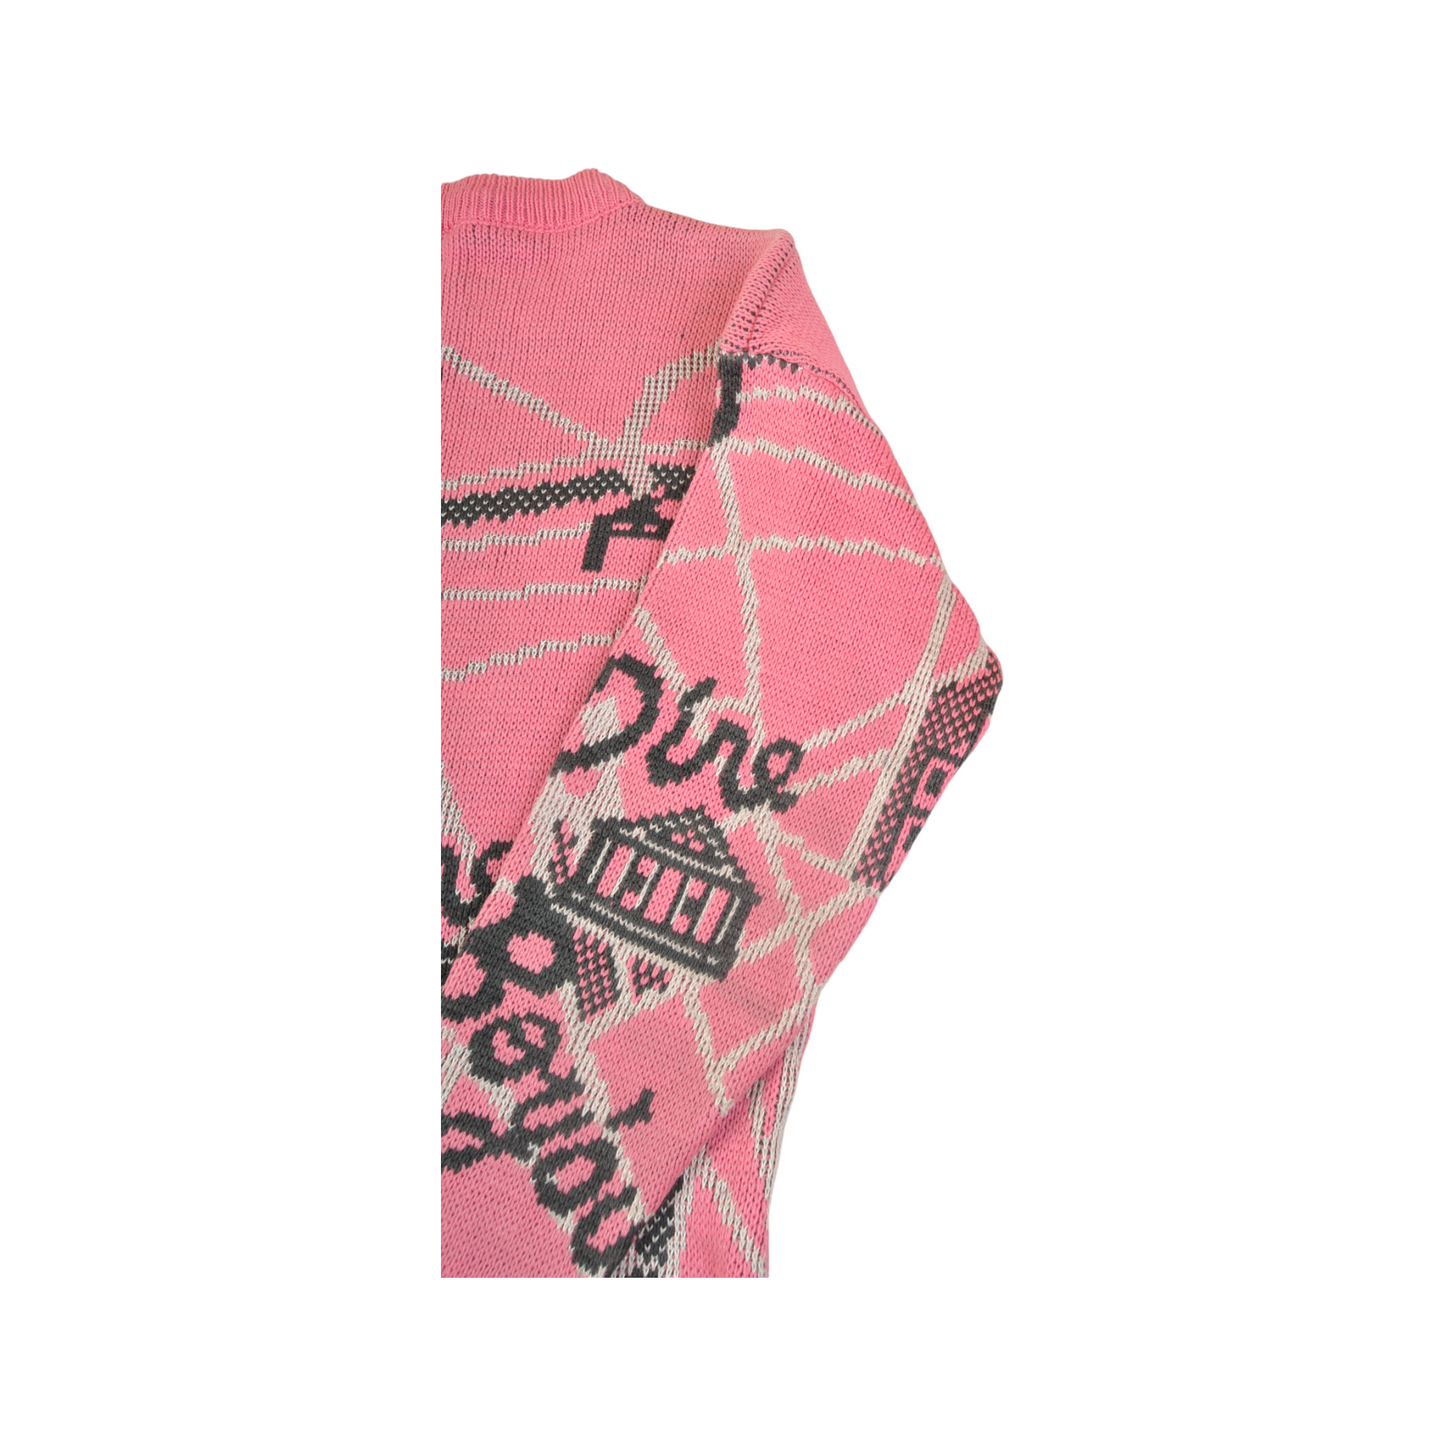 Vintage Knitted Jumper Retro Paris Print Pink Ladies XS